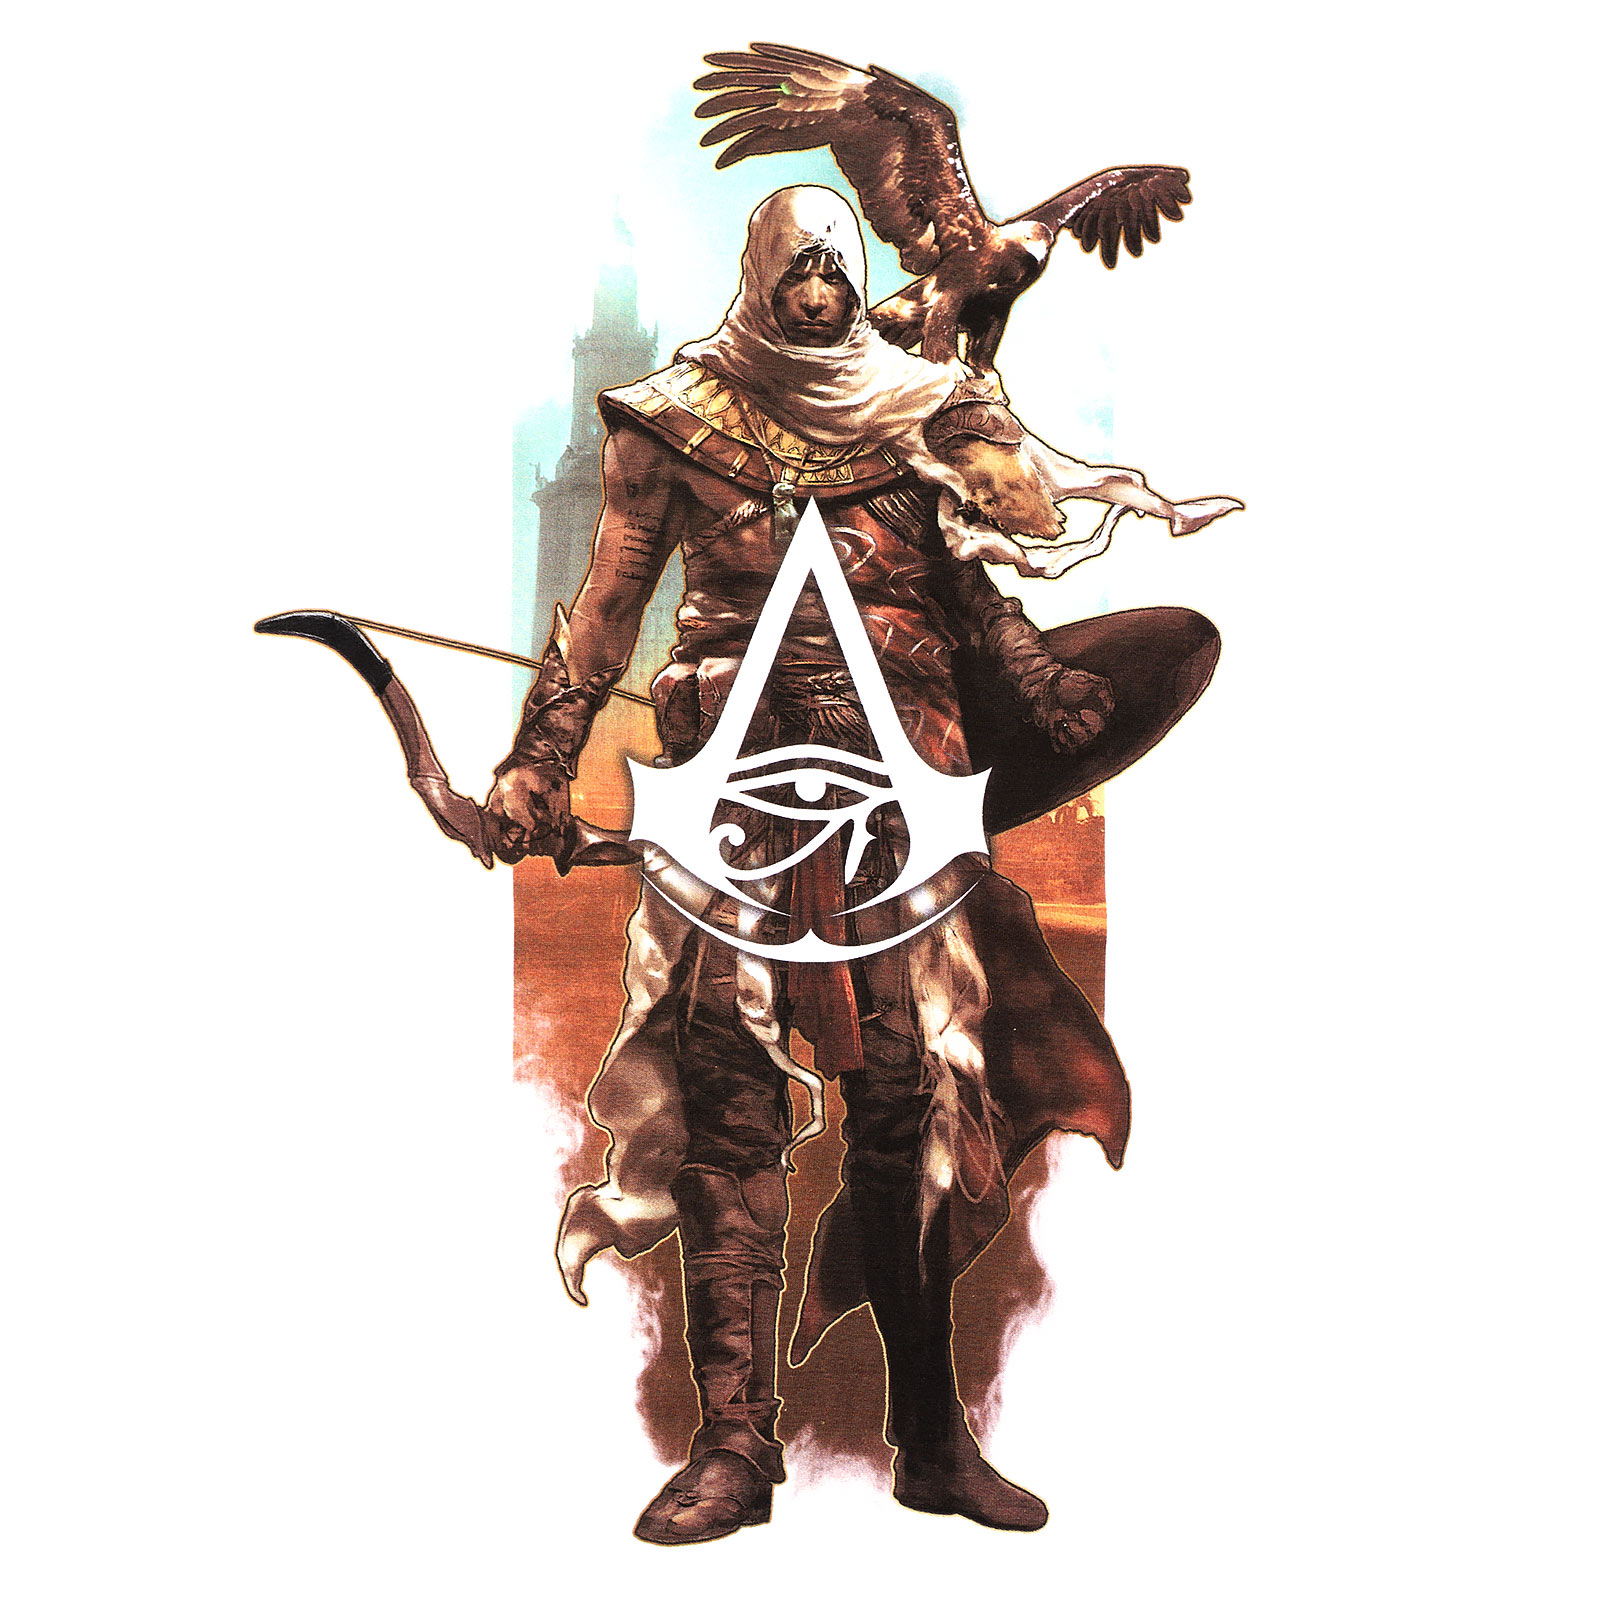 Assassins Creed - Bayek avec Senu t-shirt blanc